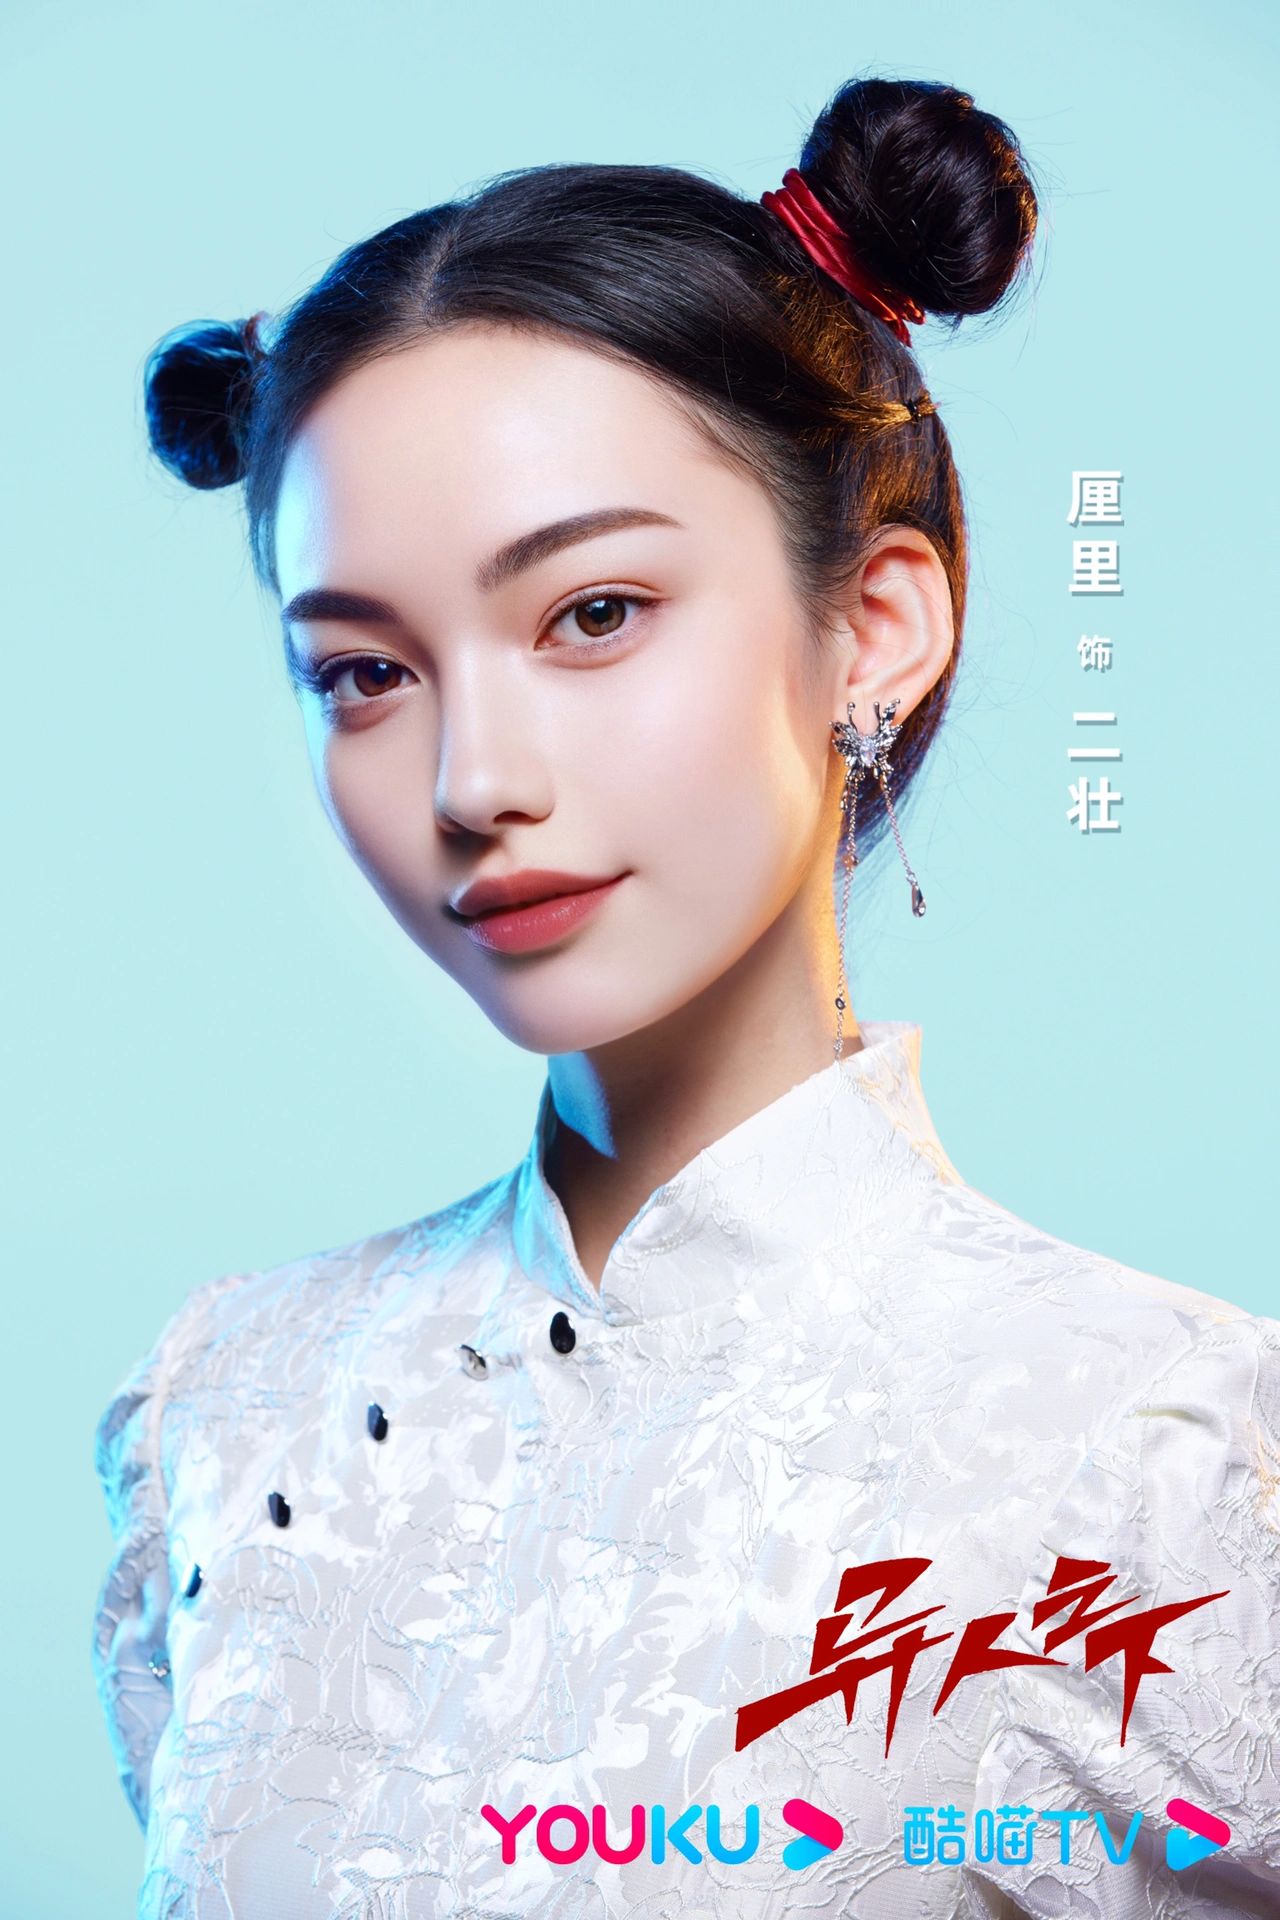 中國首個 AI 女演員